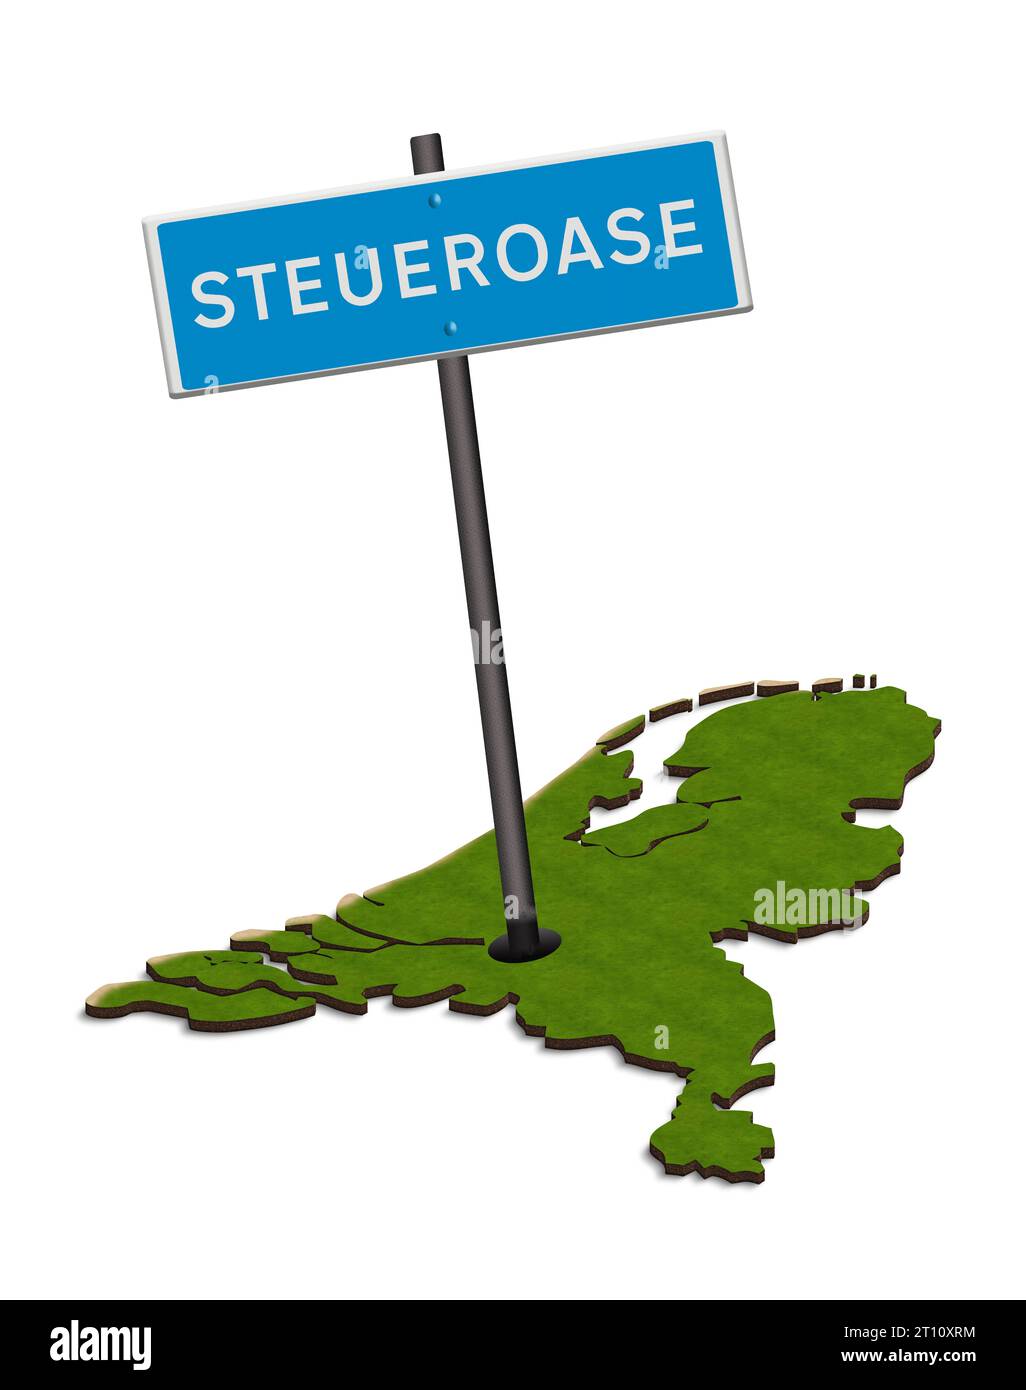 Abbildung - Verkehrszeichen Steueroase mit Karte der Niederlande. Die Niederlande werden häufig als Steueroase für Körperschaftsteuerzwecke angesehen. Innerhalb des Landes wird kritisiert, dass die Bürger zahlen, während Unternehmen eine kostenlose Fahrt erhalten. Credit: Imago/Alamy Live News Stock Photo